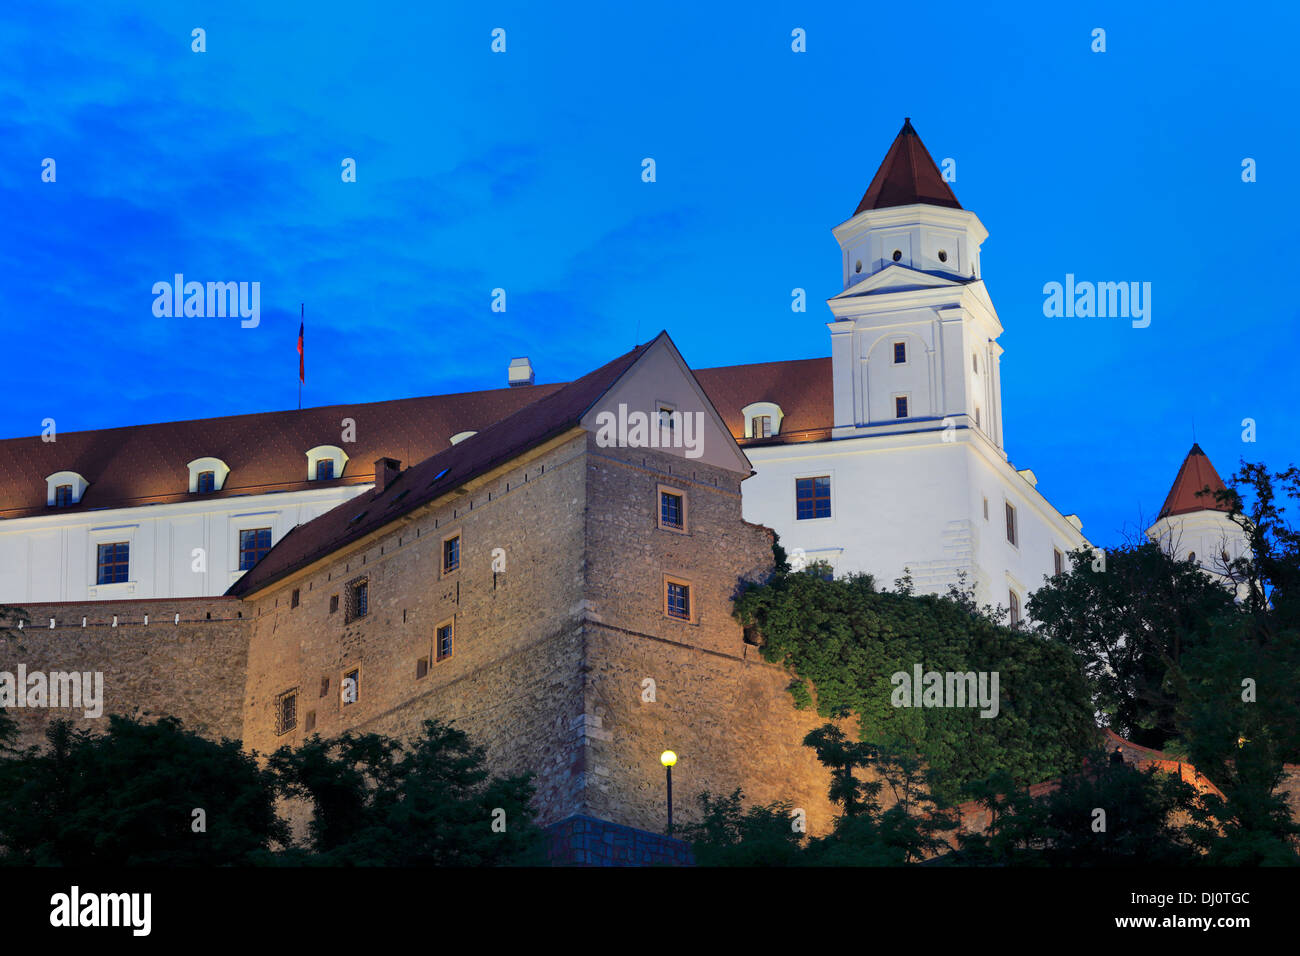 Château de Bratislava la nuit, Bratislava, Slovaquie Banque D'Images